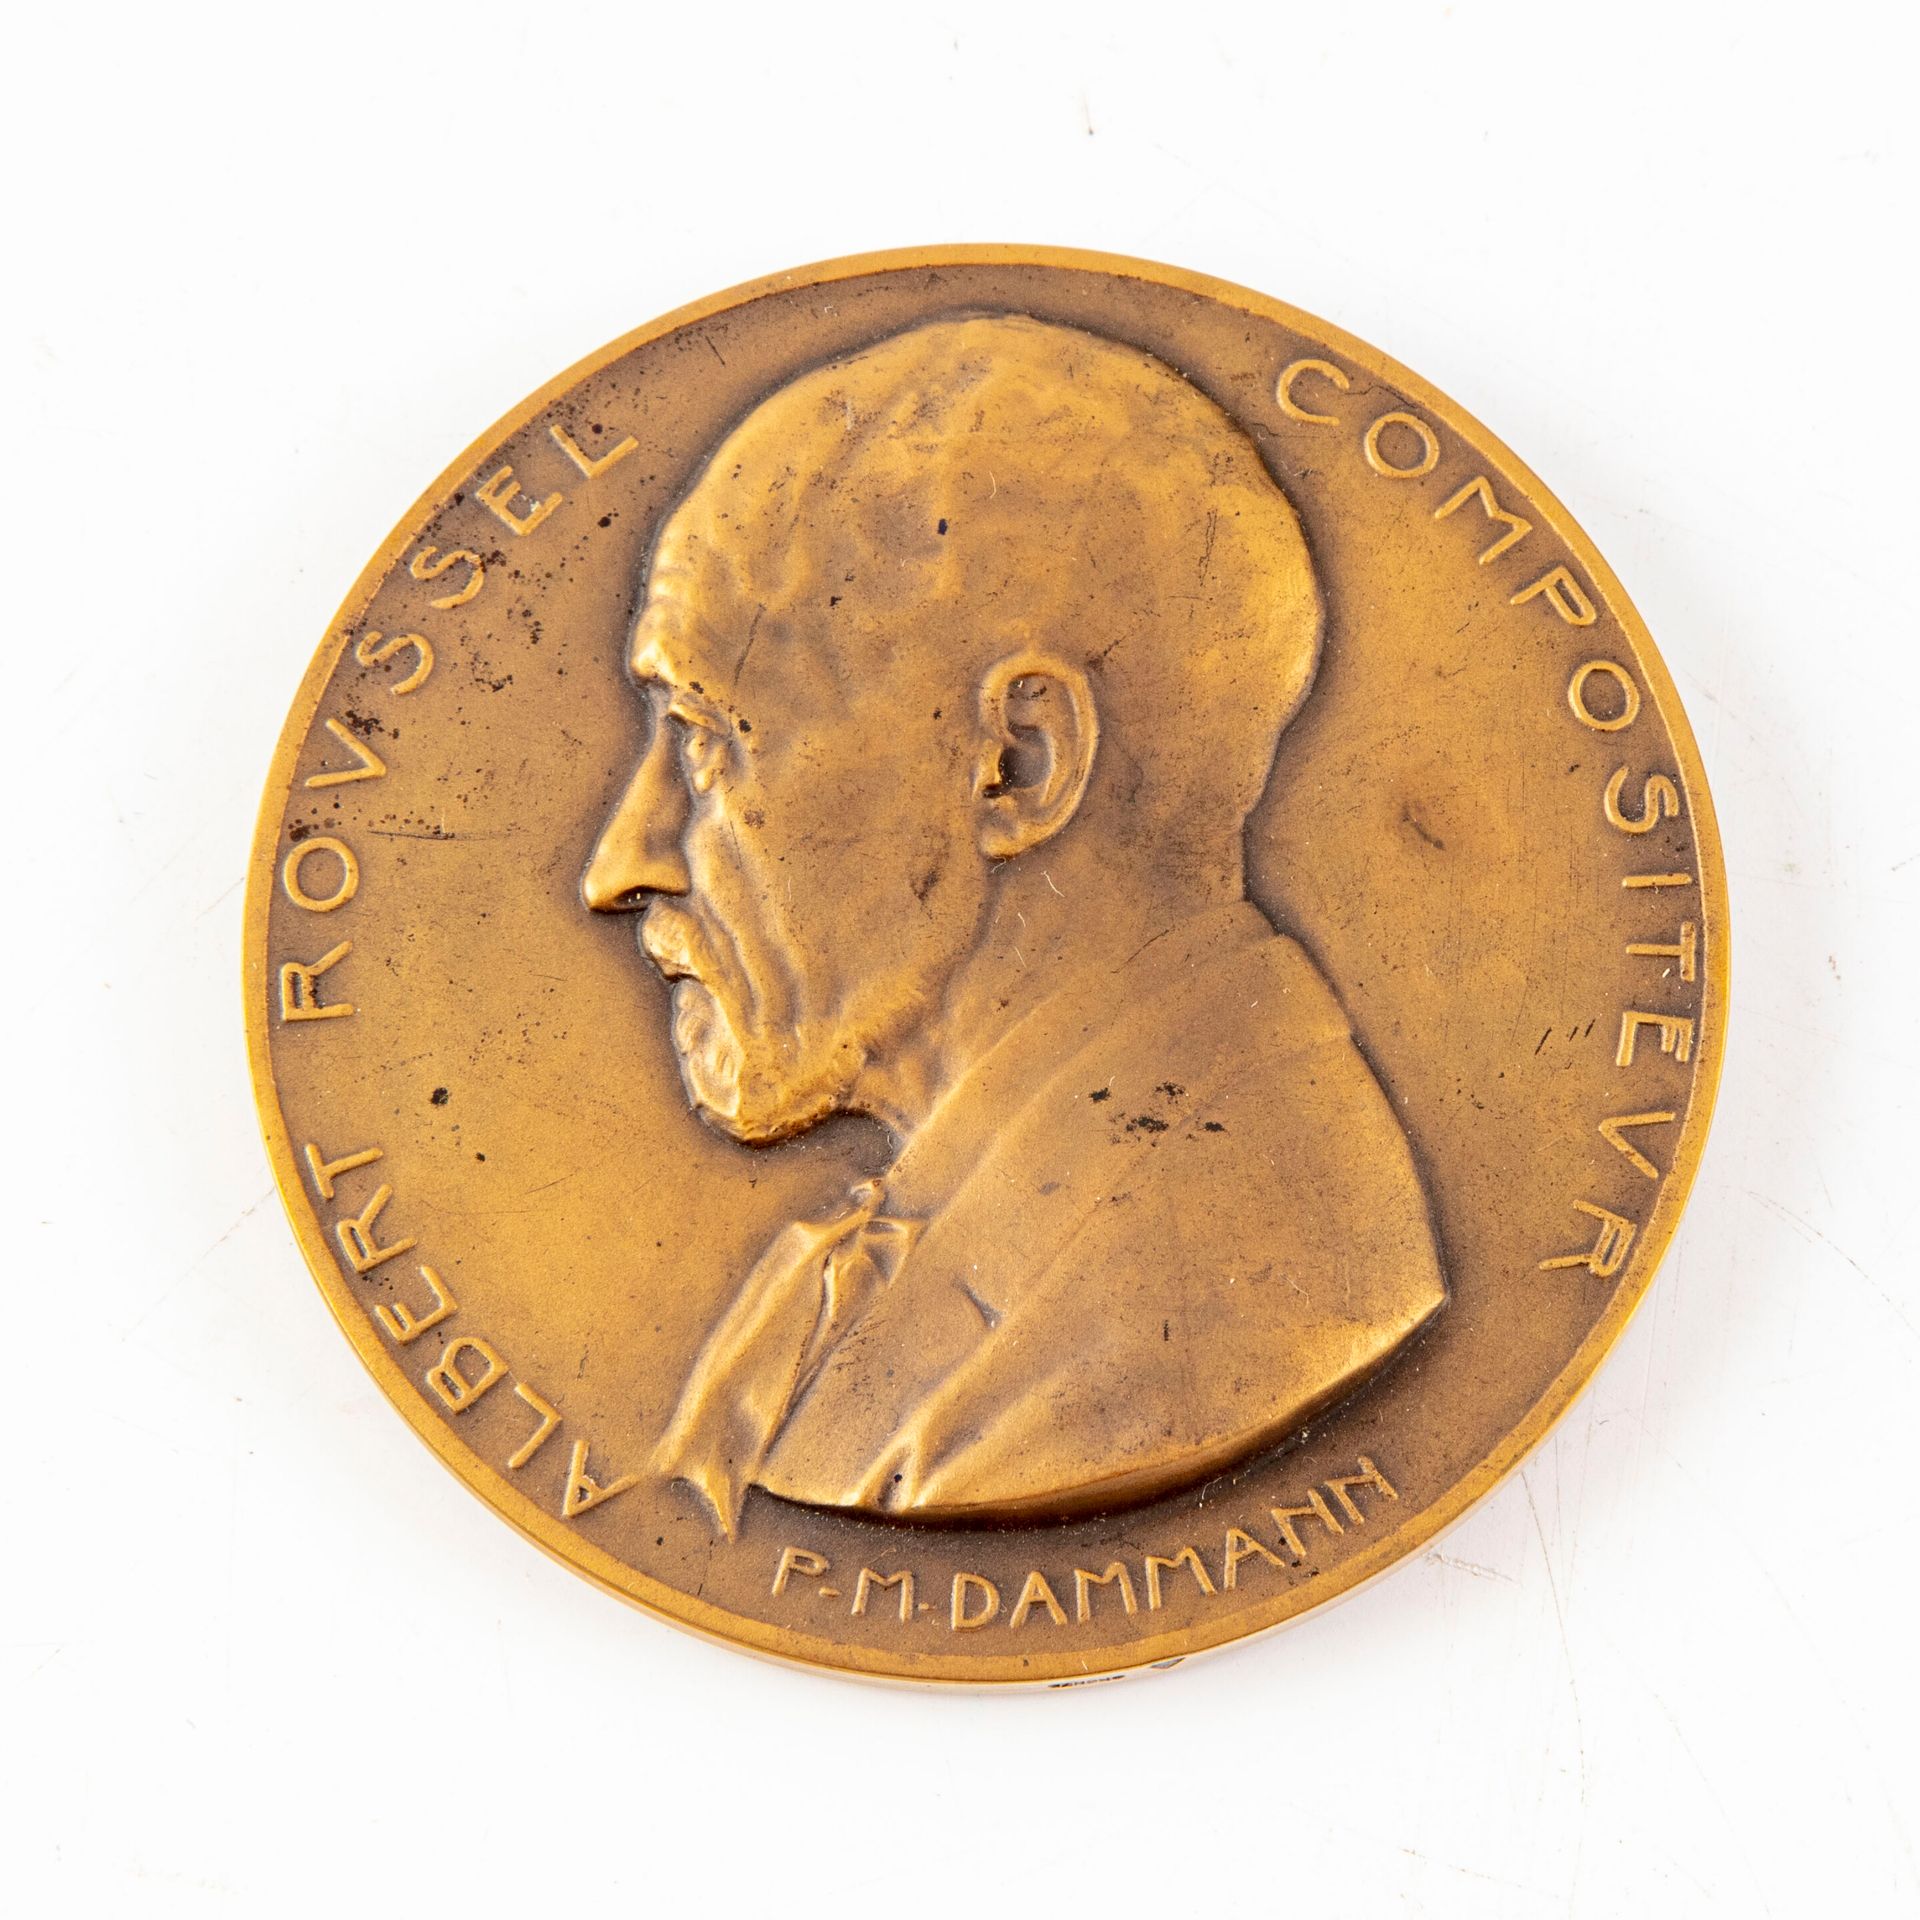 Null Medaille mit dem Bildnis des Komponisten Abert Roussel.

1929

D. : 6,7 mm